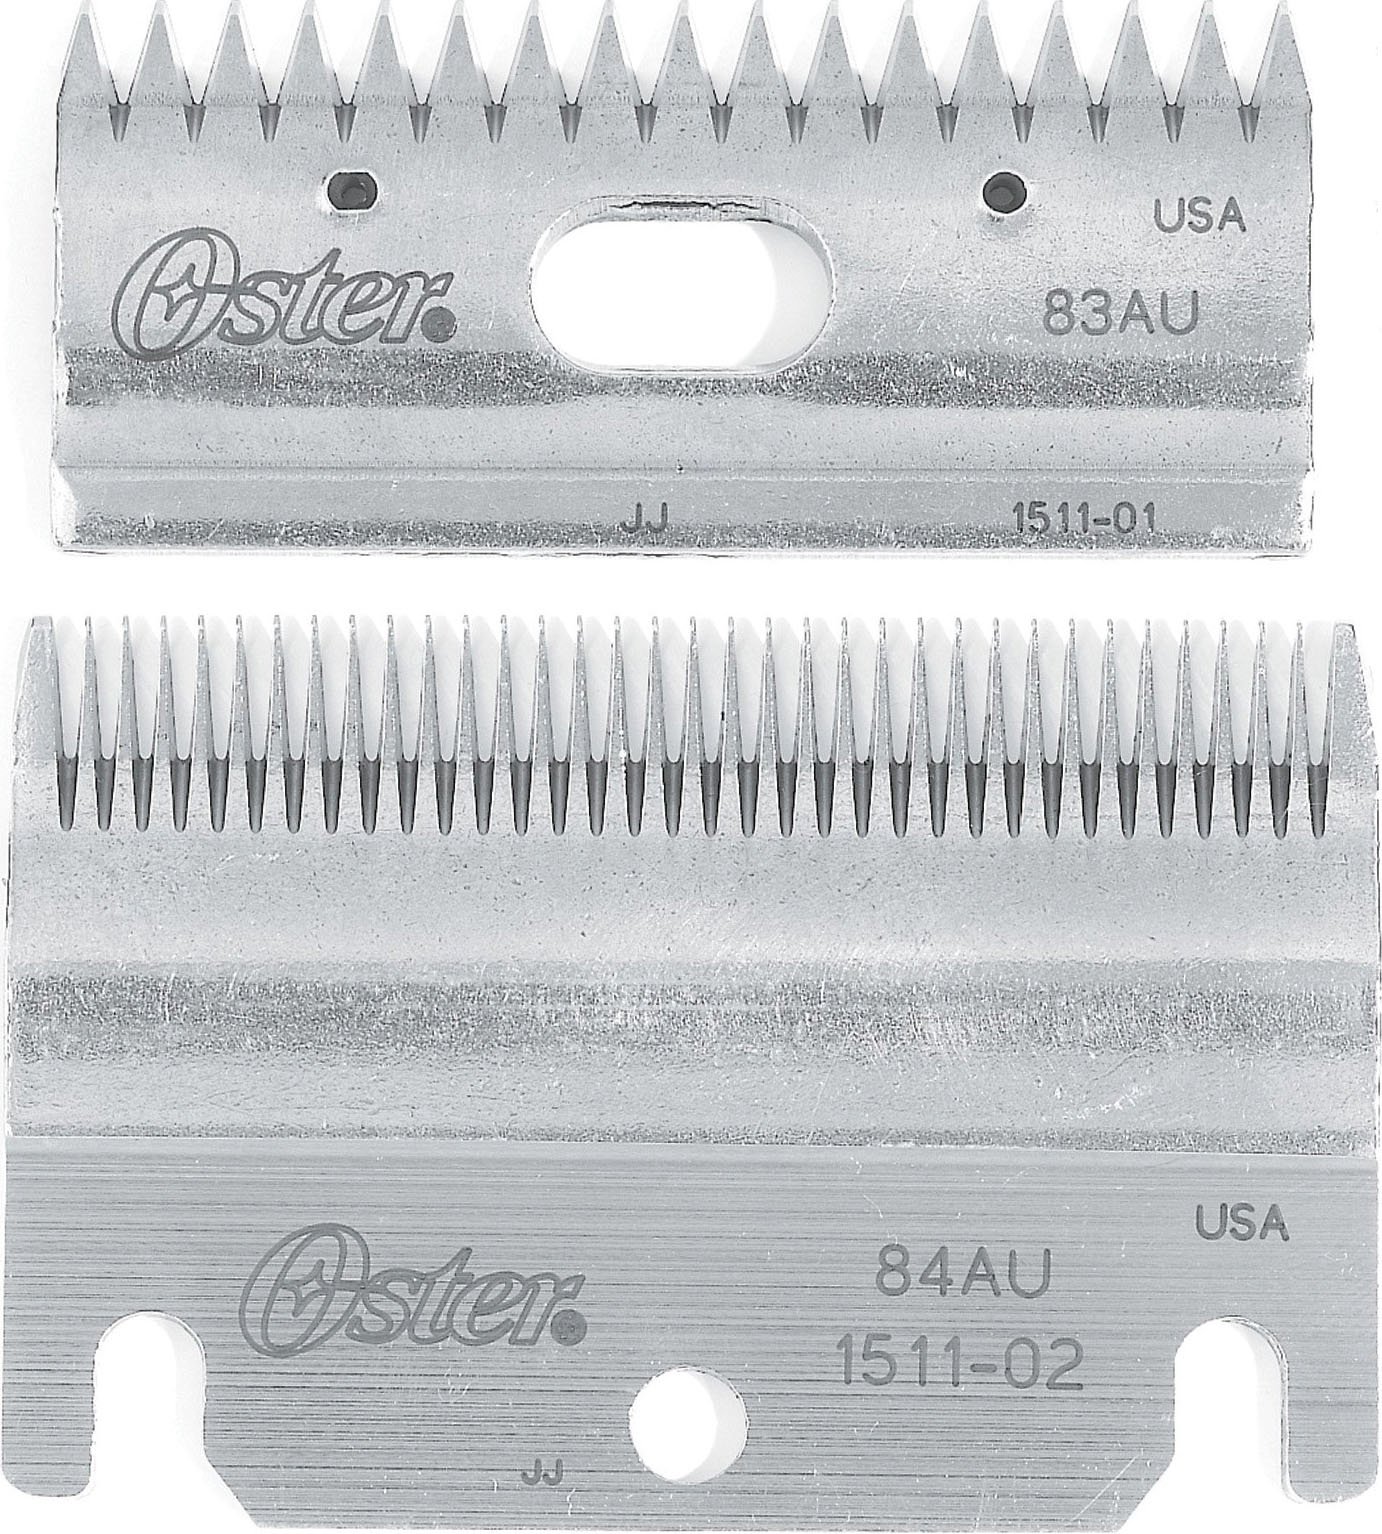 Oster Clipmaster Schneidklingen-Set, Oben und unten, 83AU und 84AU (078511-126-001)